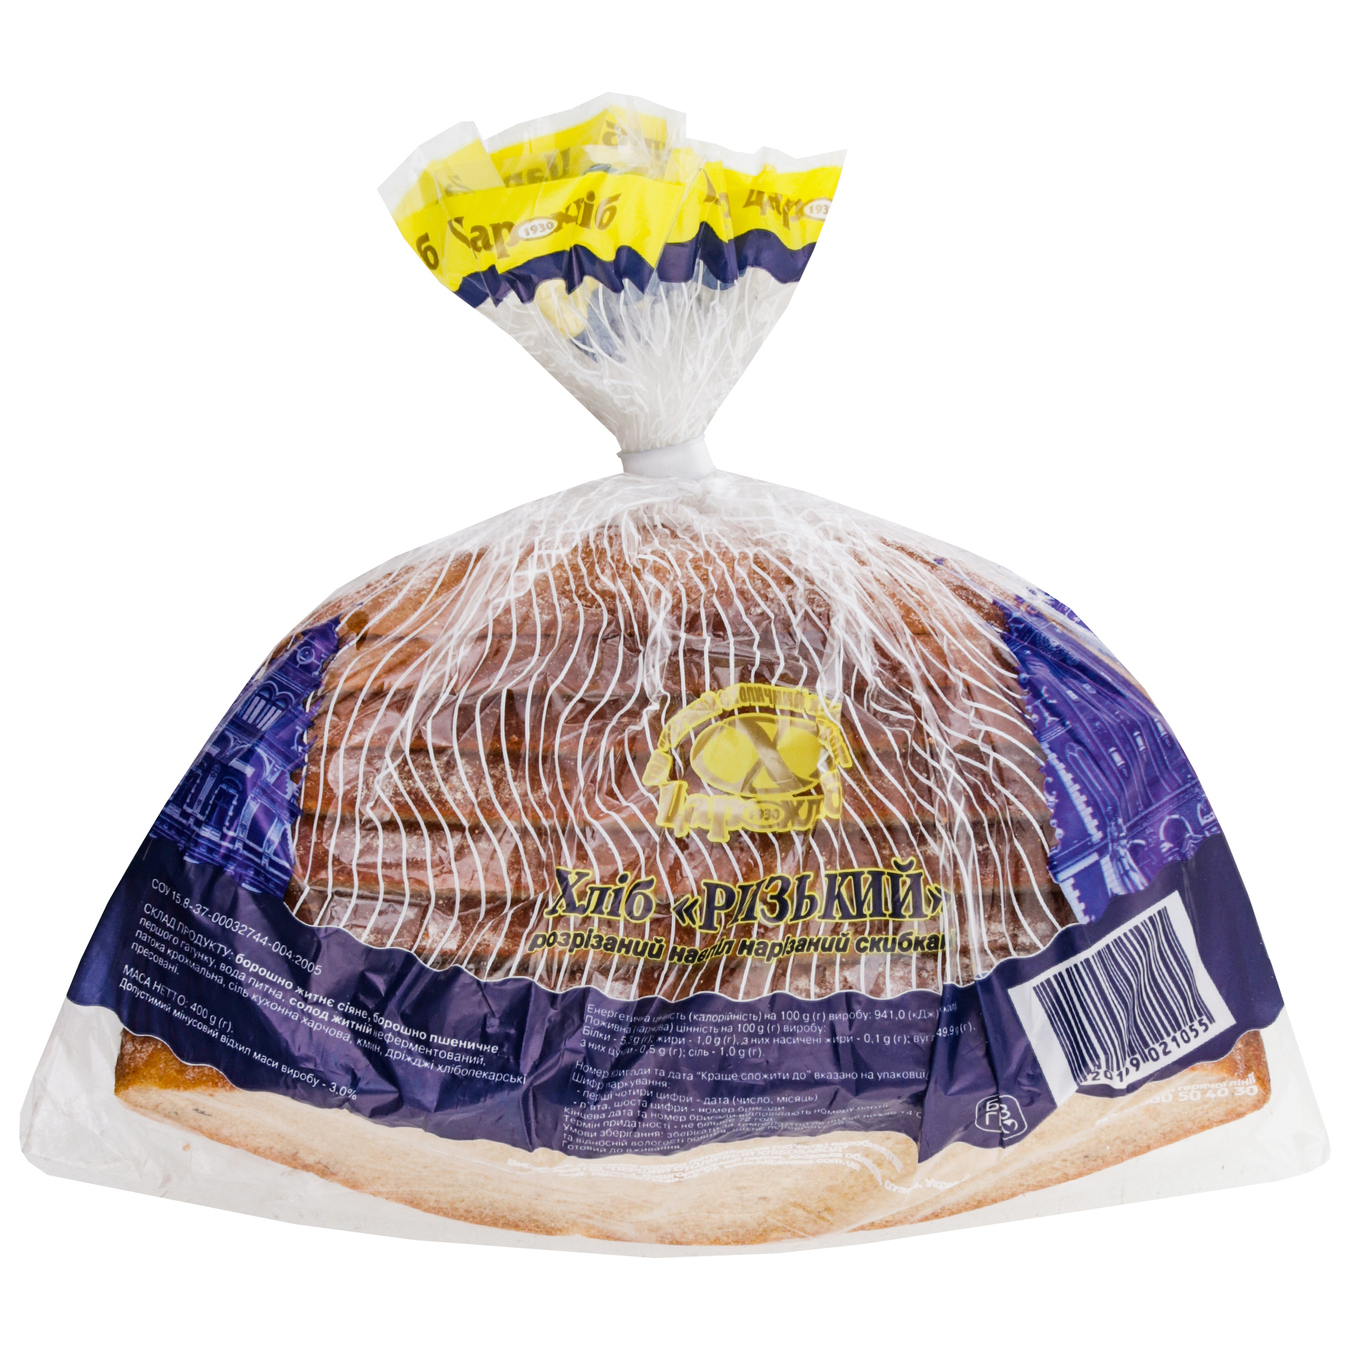 Хлеб Царь хлеб Рижский разрезанный пополам нарезанный упакован 400г 3